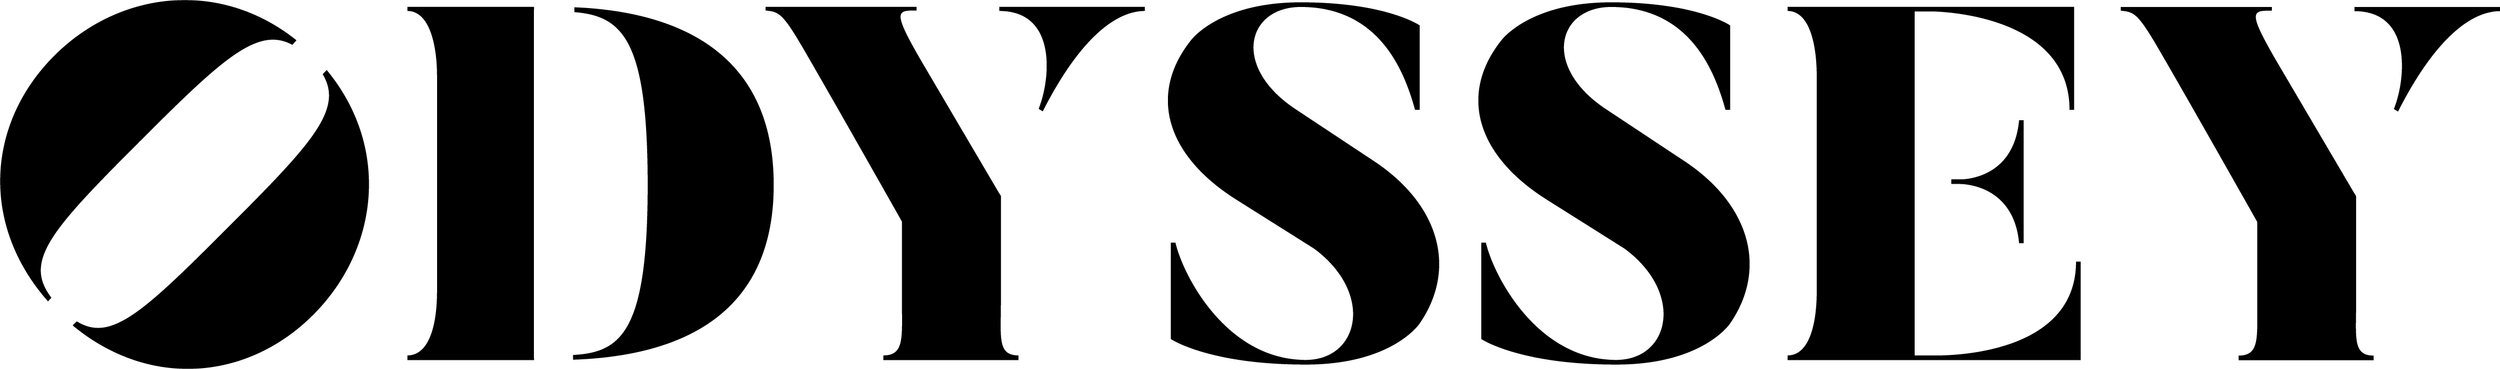 odyssey-logo-black236.jpg